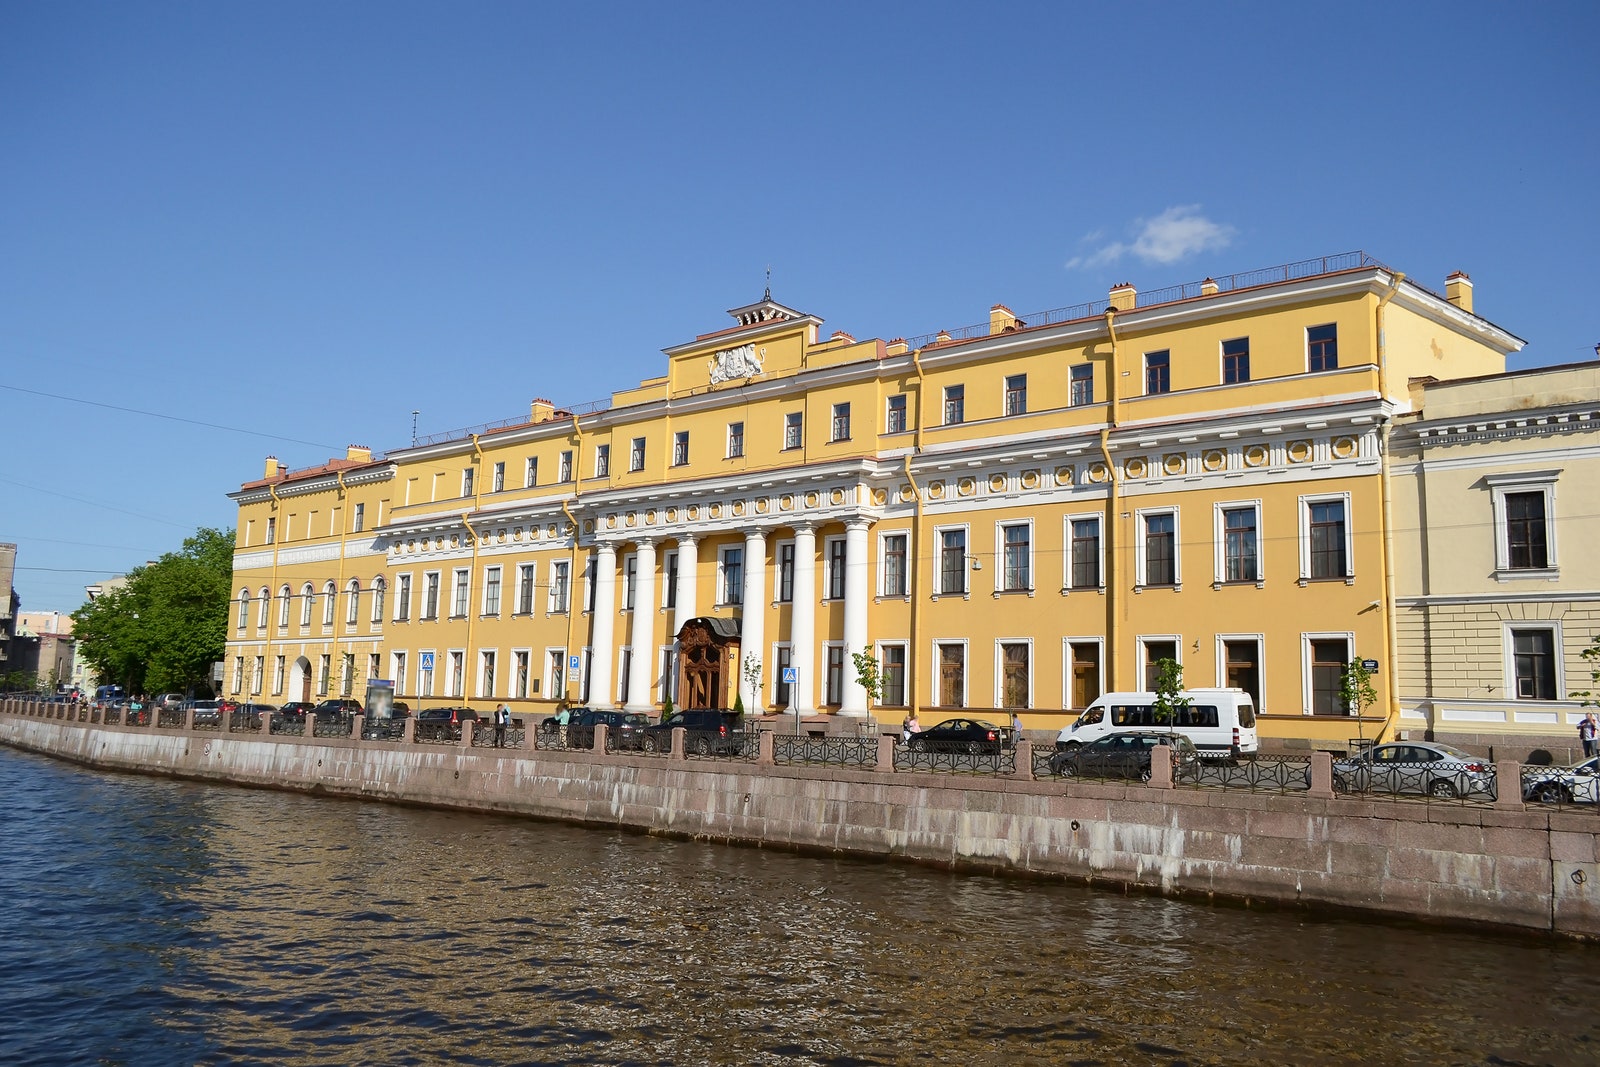 Жизнь покоролевски 5 самых красивых дворцов России